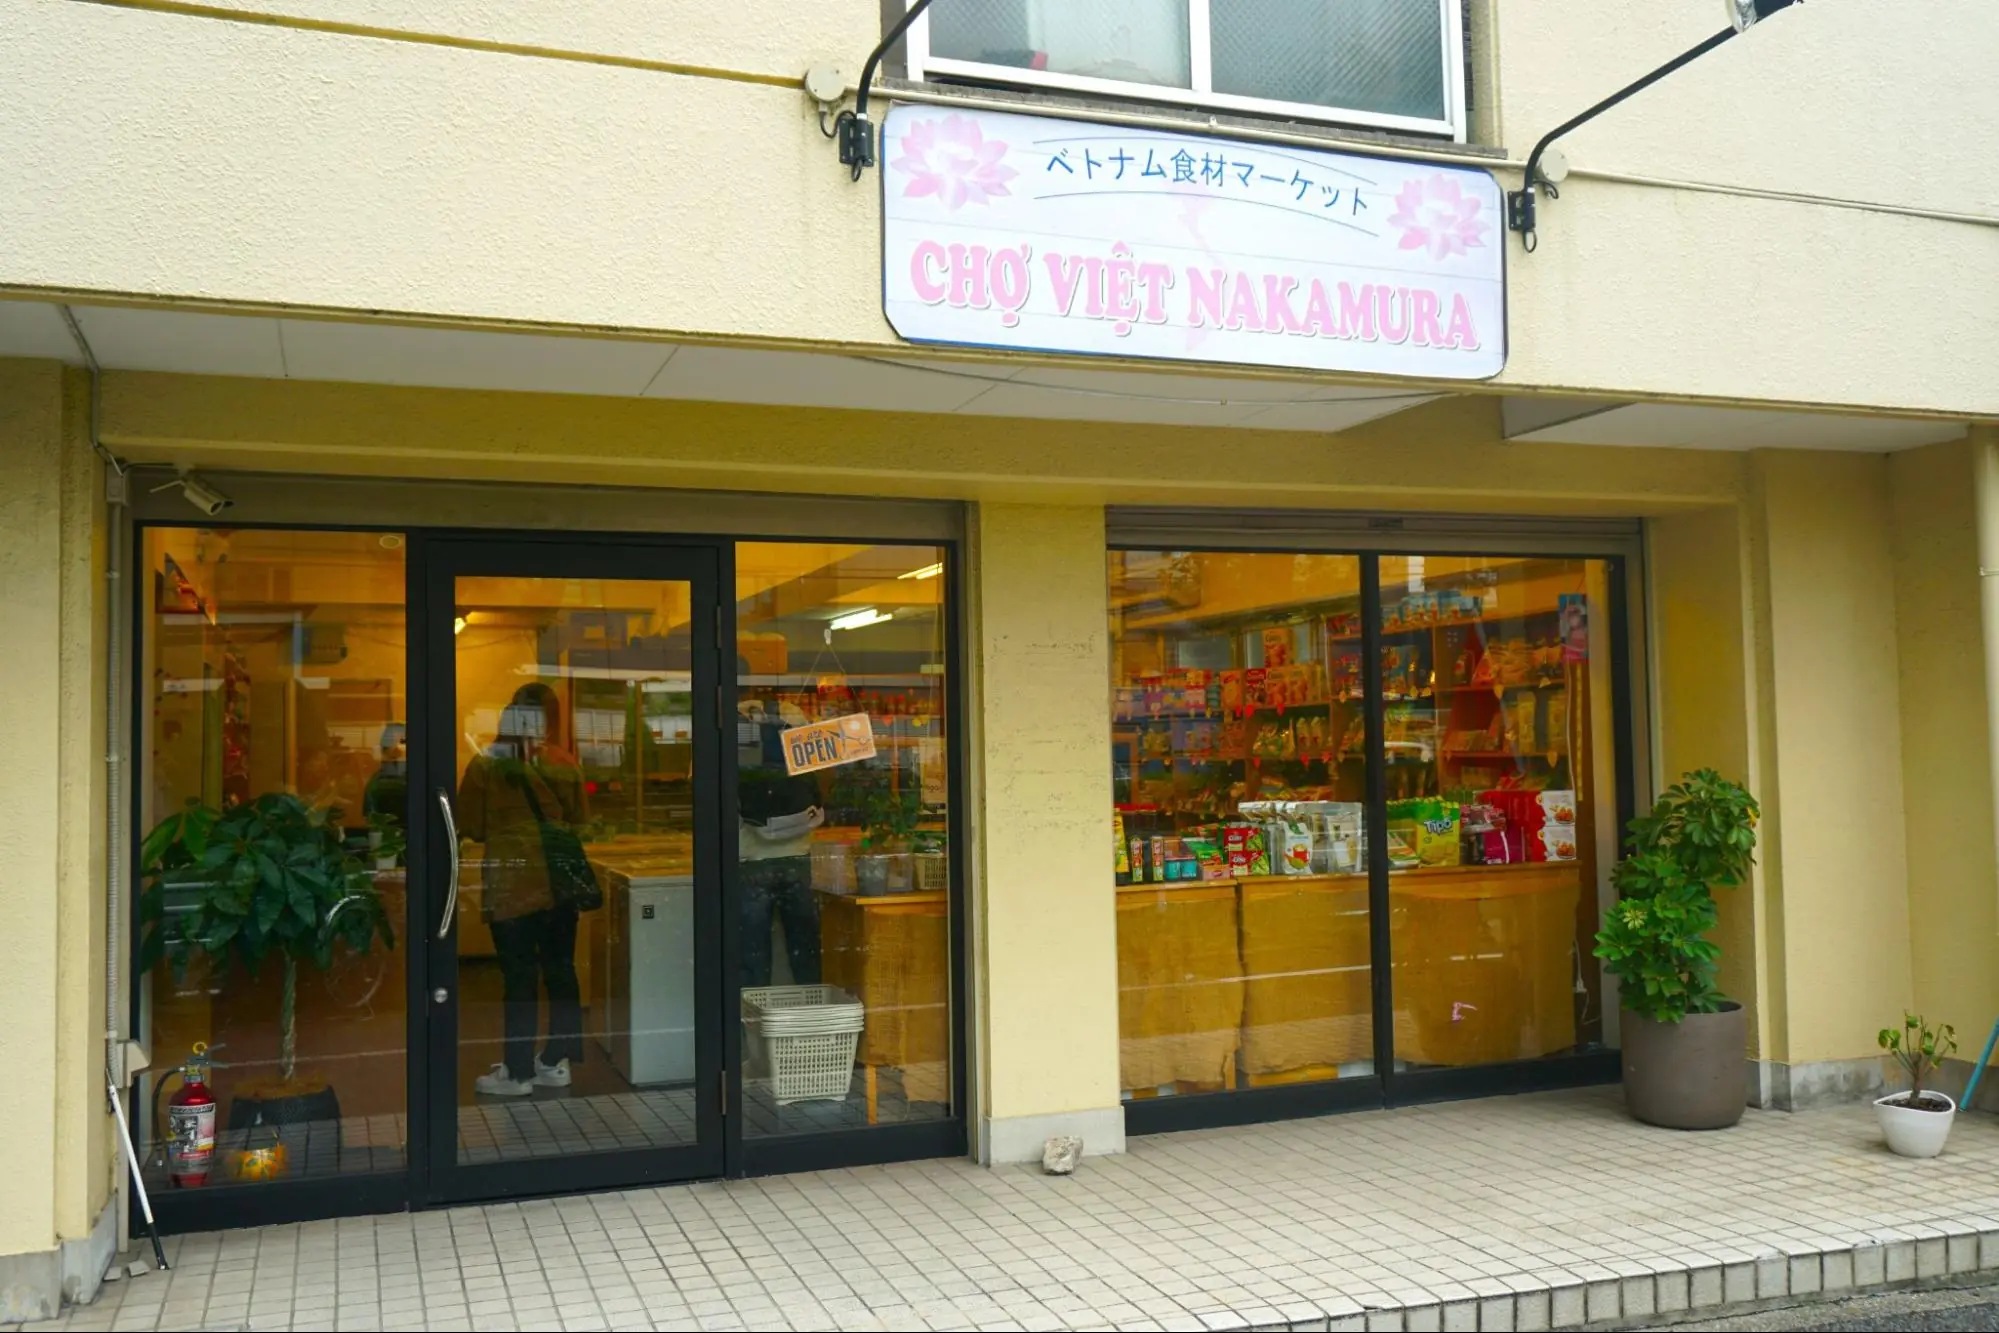 ベトナム食品店 「Cho viet nakamura（チョ・ヴェット・ナカムラ）」